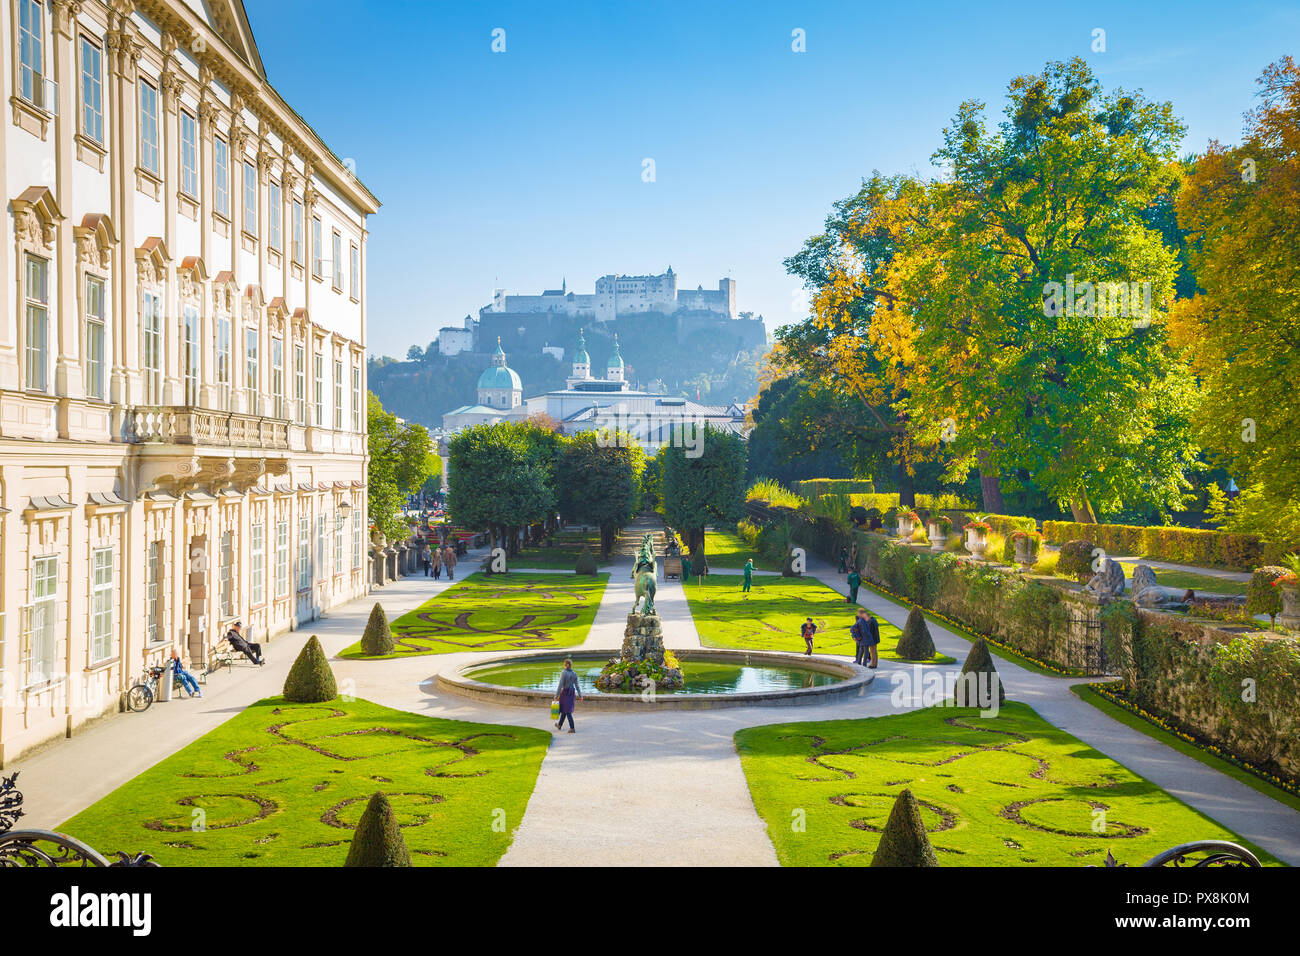 L'affichage classique des jardins Mirabell célèbre avec la Forteresse de Hohensalzburg historique dans l'arrière-plan sur une journée ensoleillée à Salzbourg, Autriche Banque D'Images